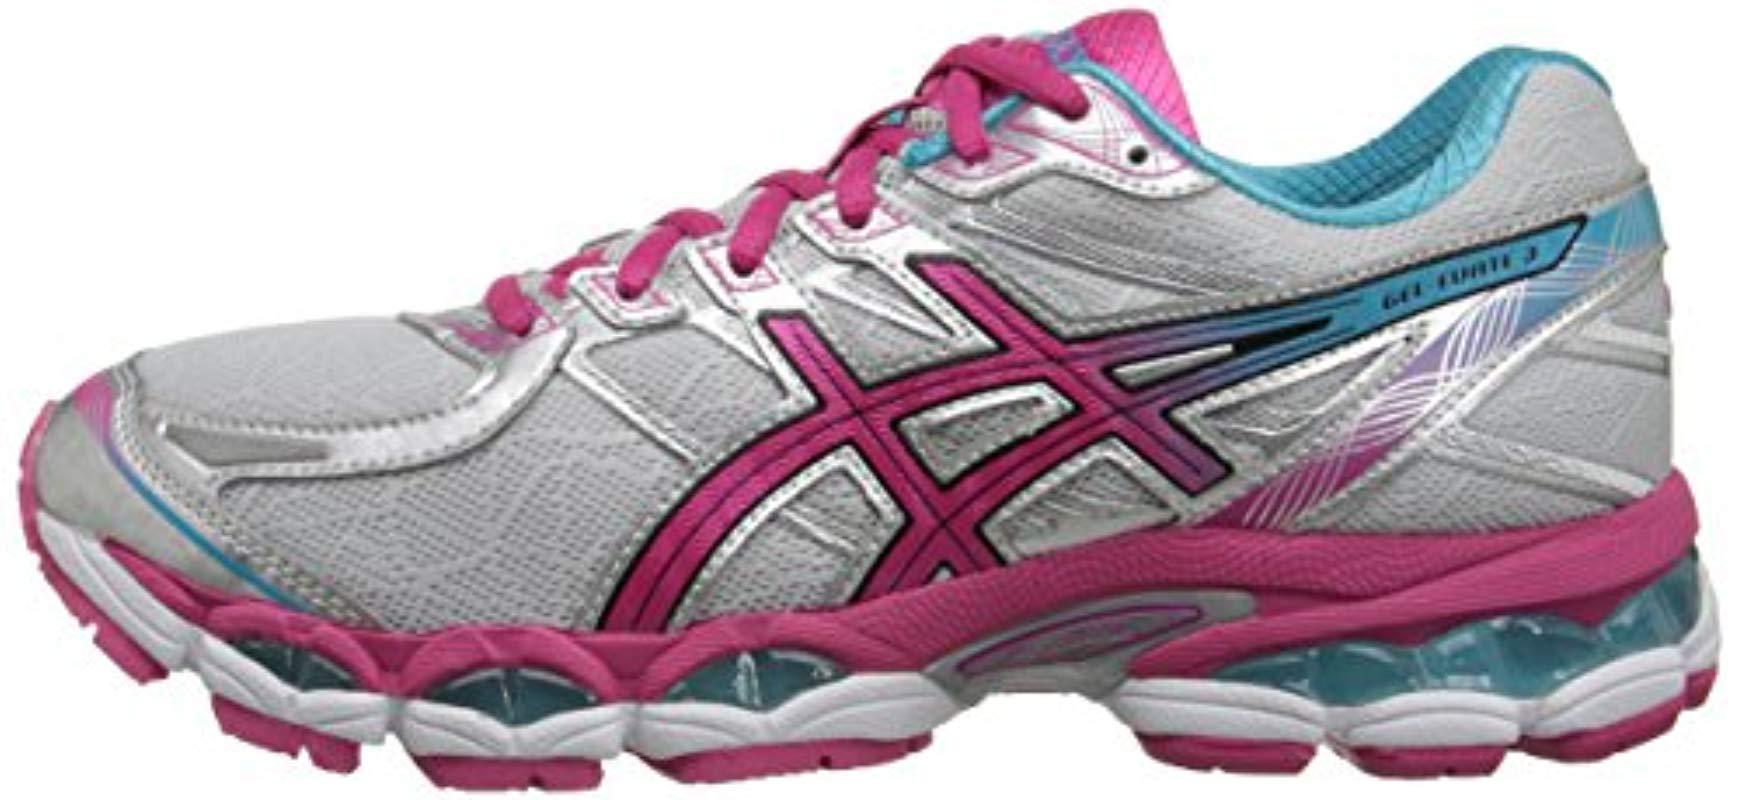 asics women's gel evate 3 running shoe